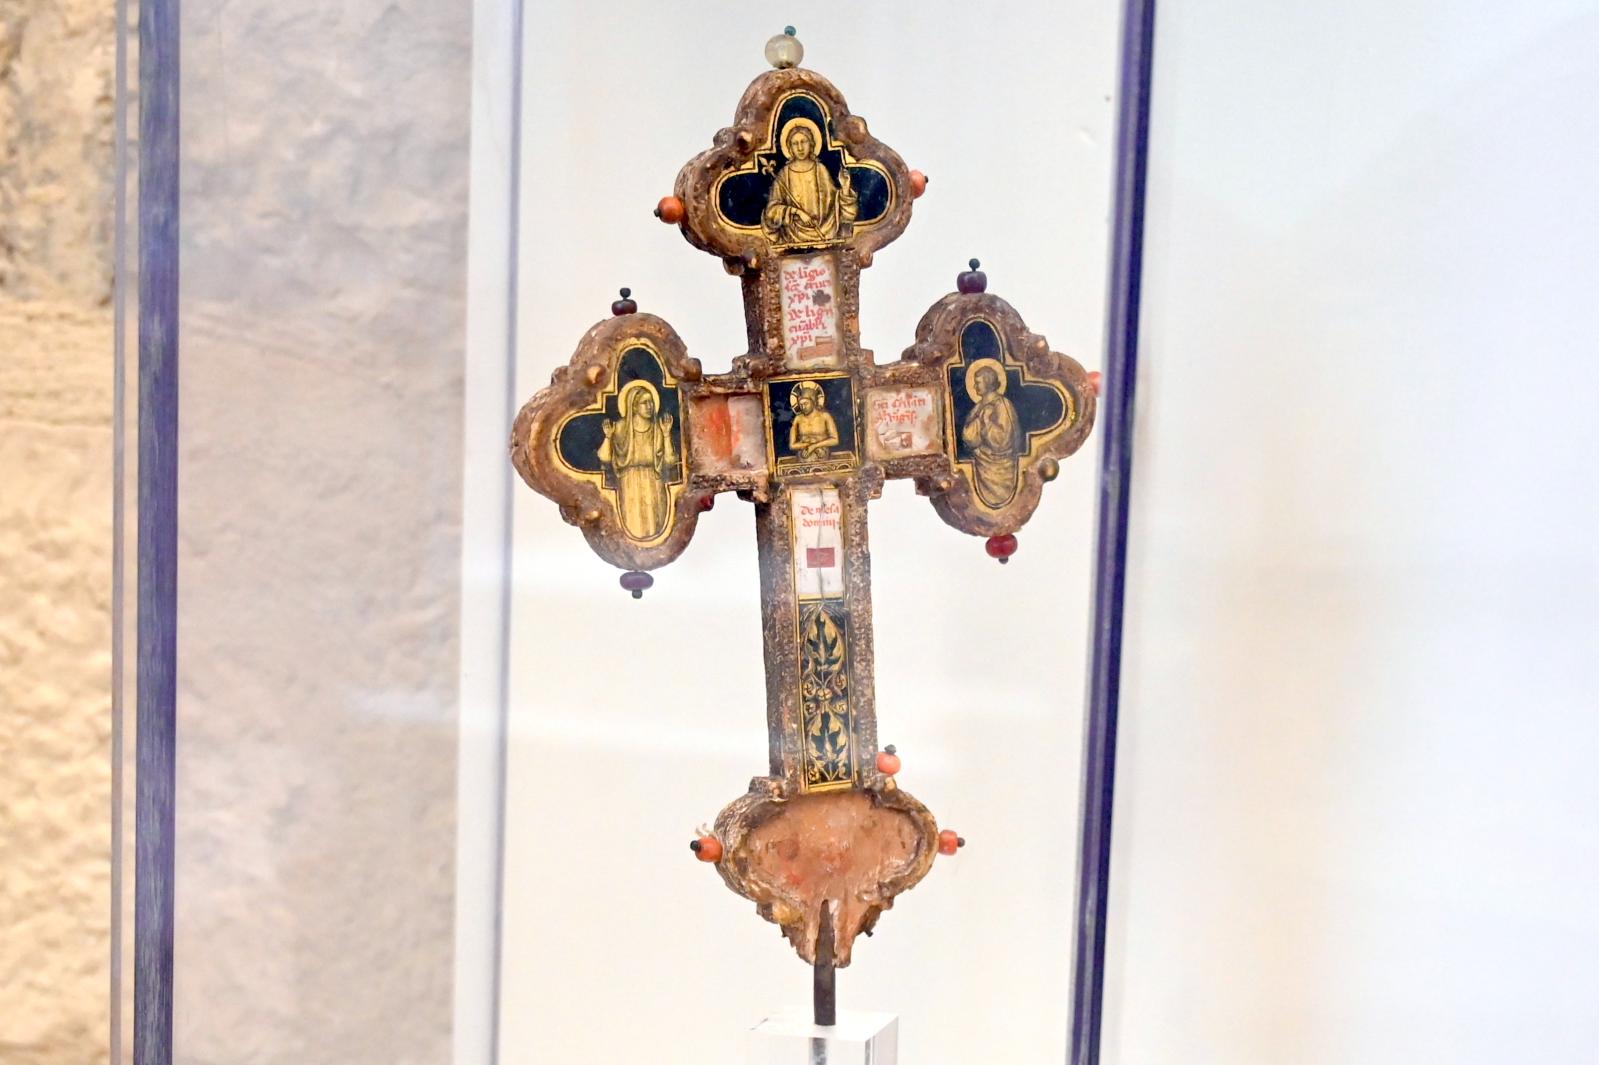 Puccio Capanna (Umkreis) (1335), Doppelseitiges Reliquienkreuz, Gubbio, Pinacoteca Comunale im Palazzo dei Consoli, Obergeschoss Saal 1, 1330–1340, Bild 2/4